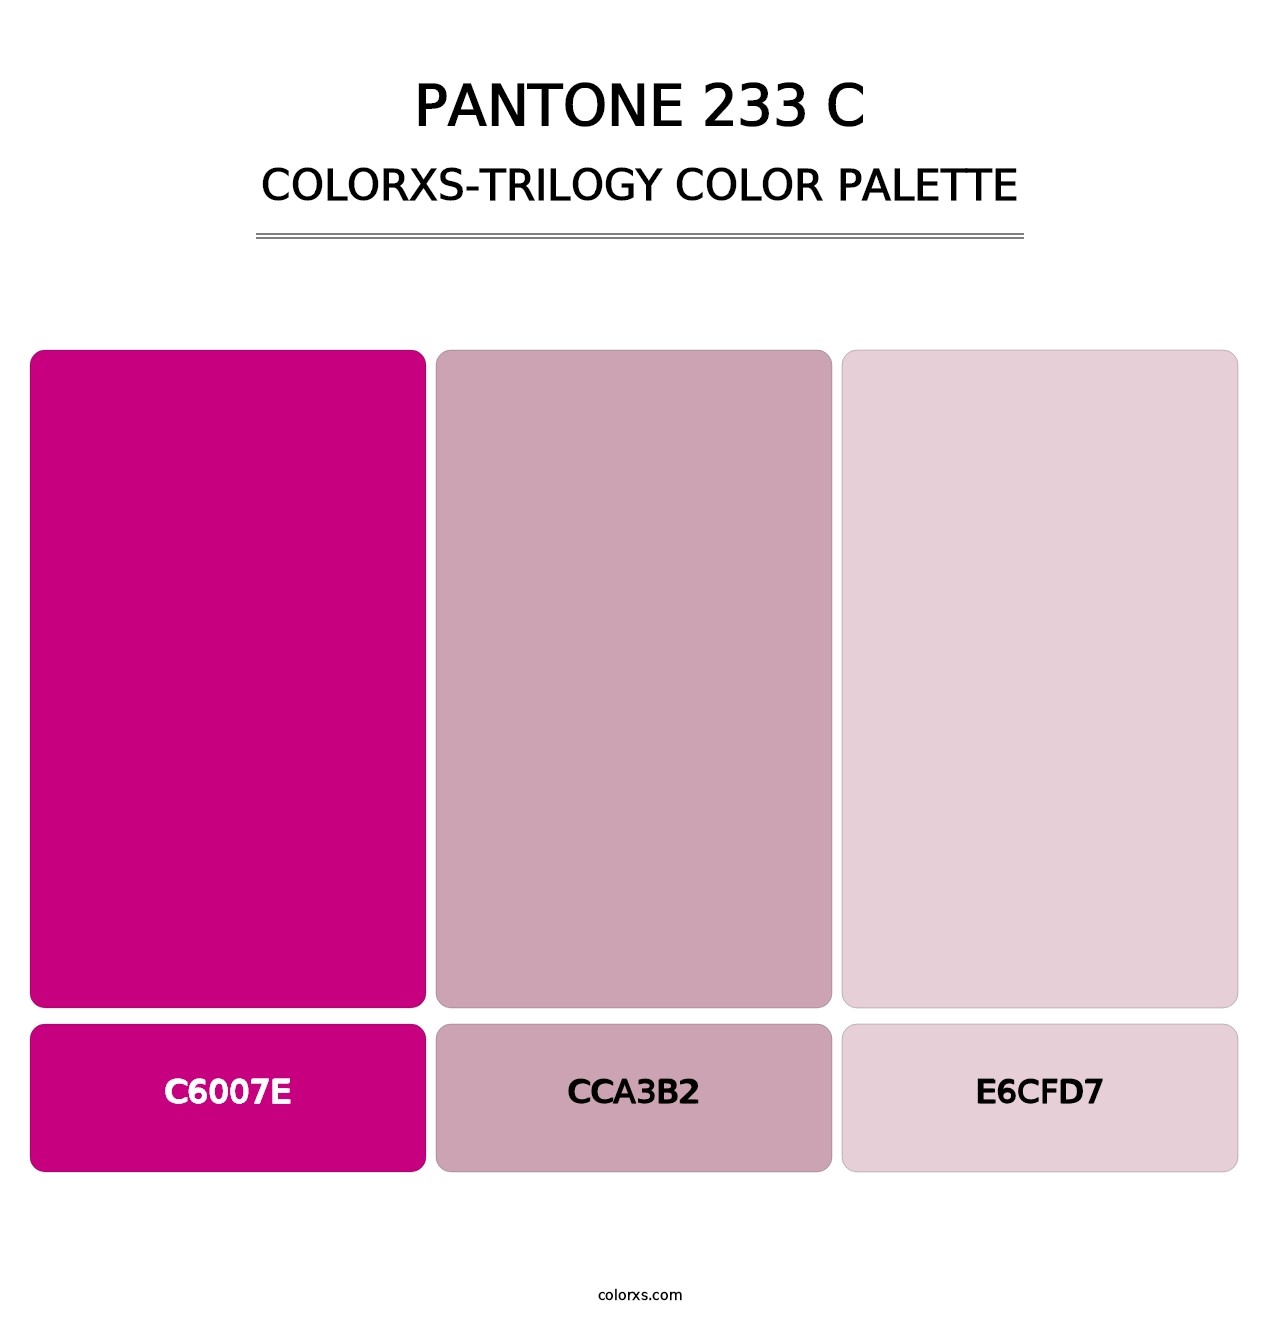 PANTONE 233 C - Colorxs Trilogy Palette